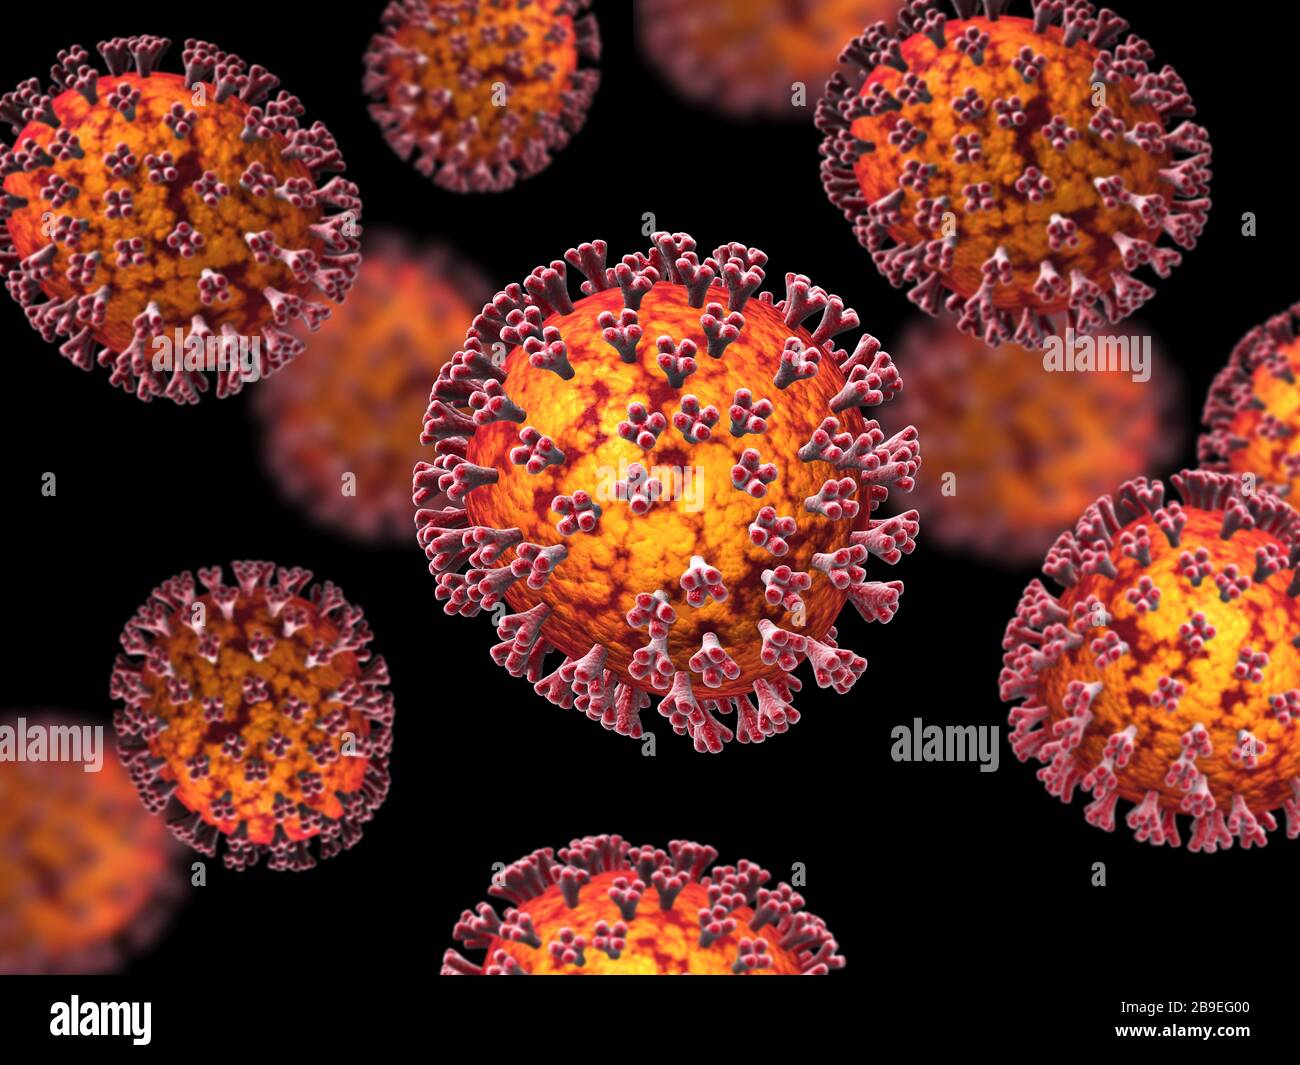 Mikroskopische Ansicht des COVID-19-Coronavirus. Stockfoto